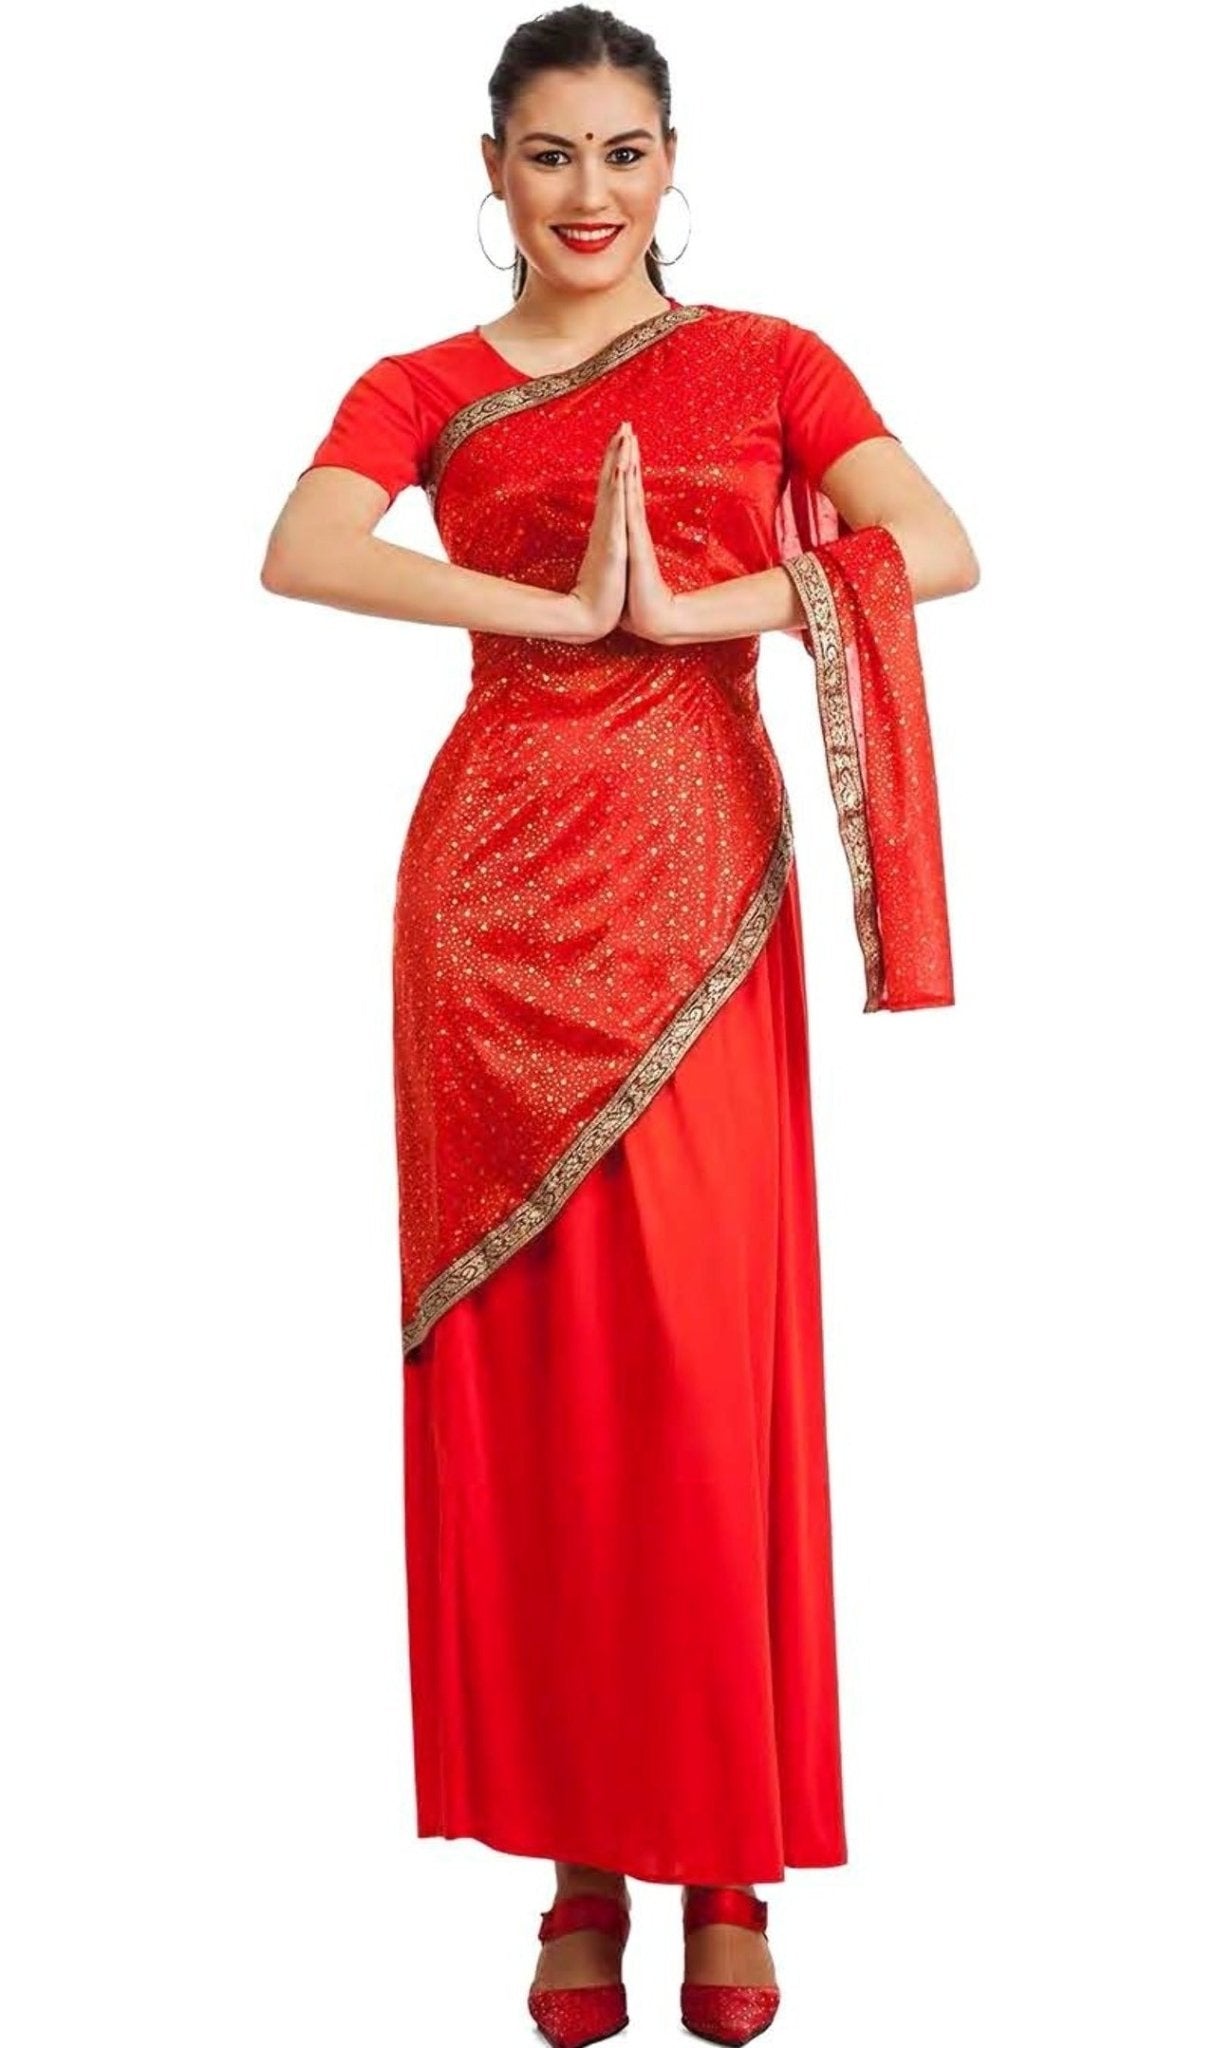 Disfraz hindú mujer - Envíos 24 horas